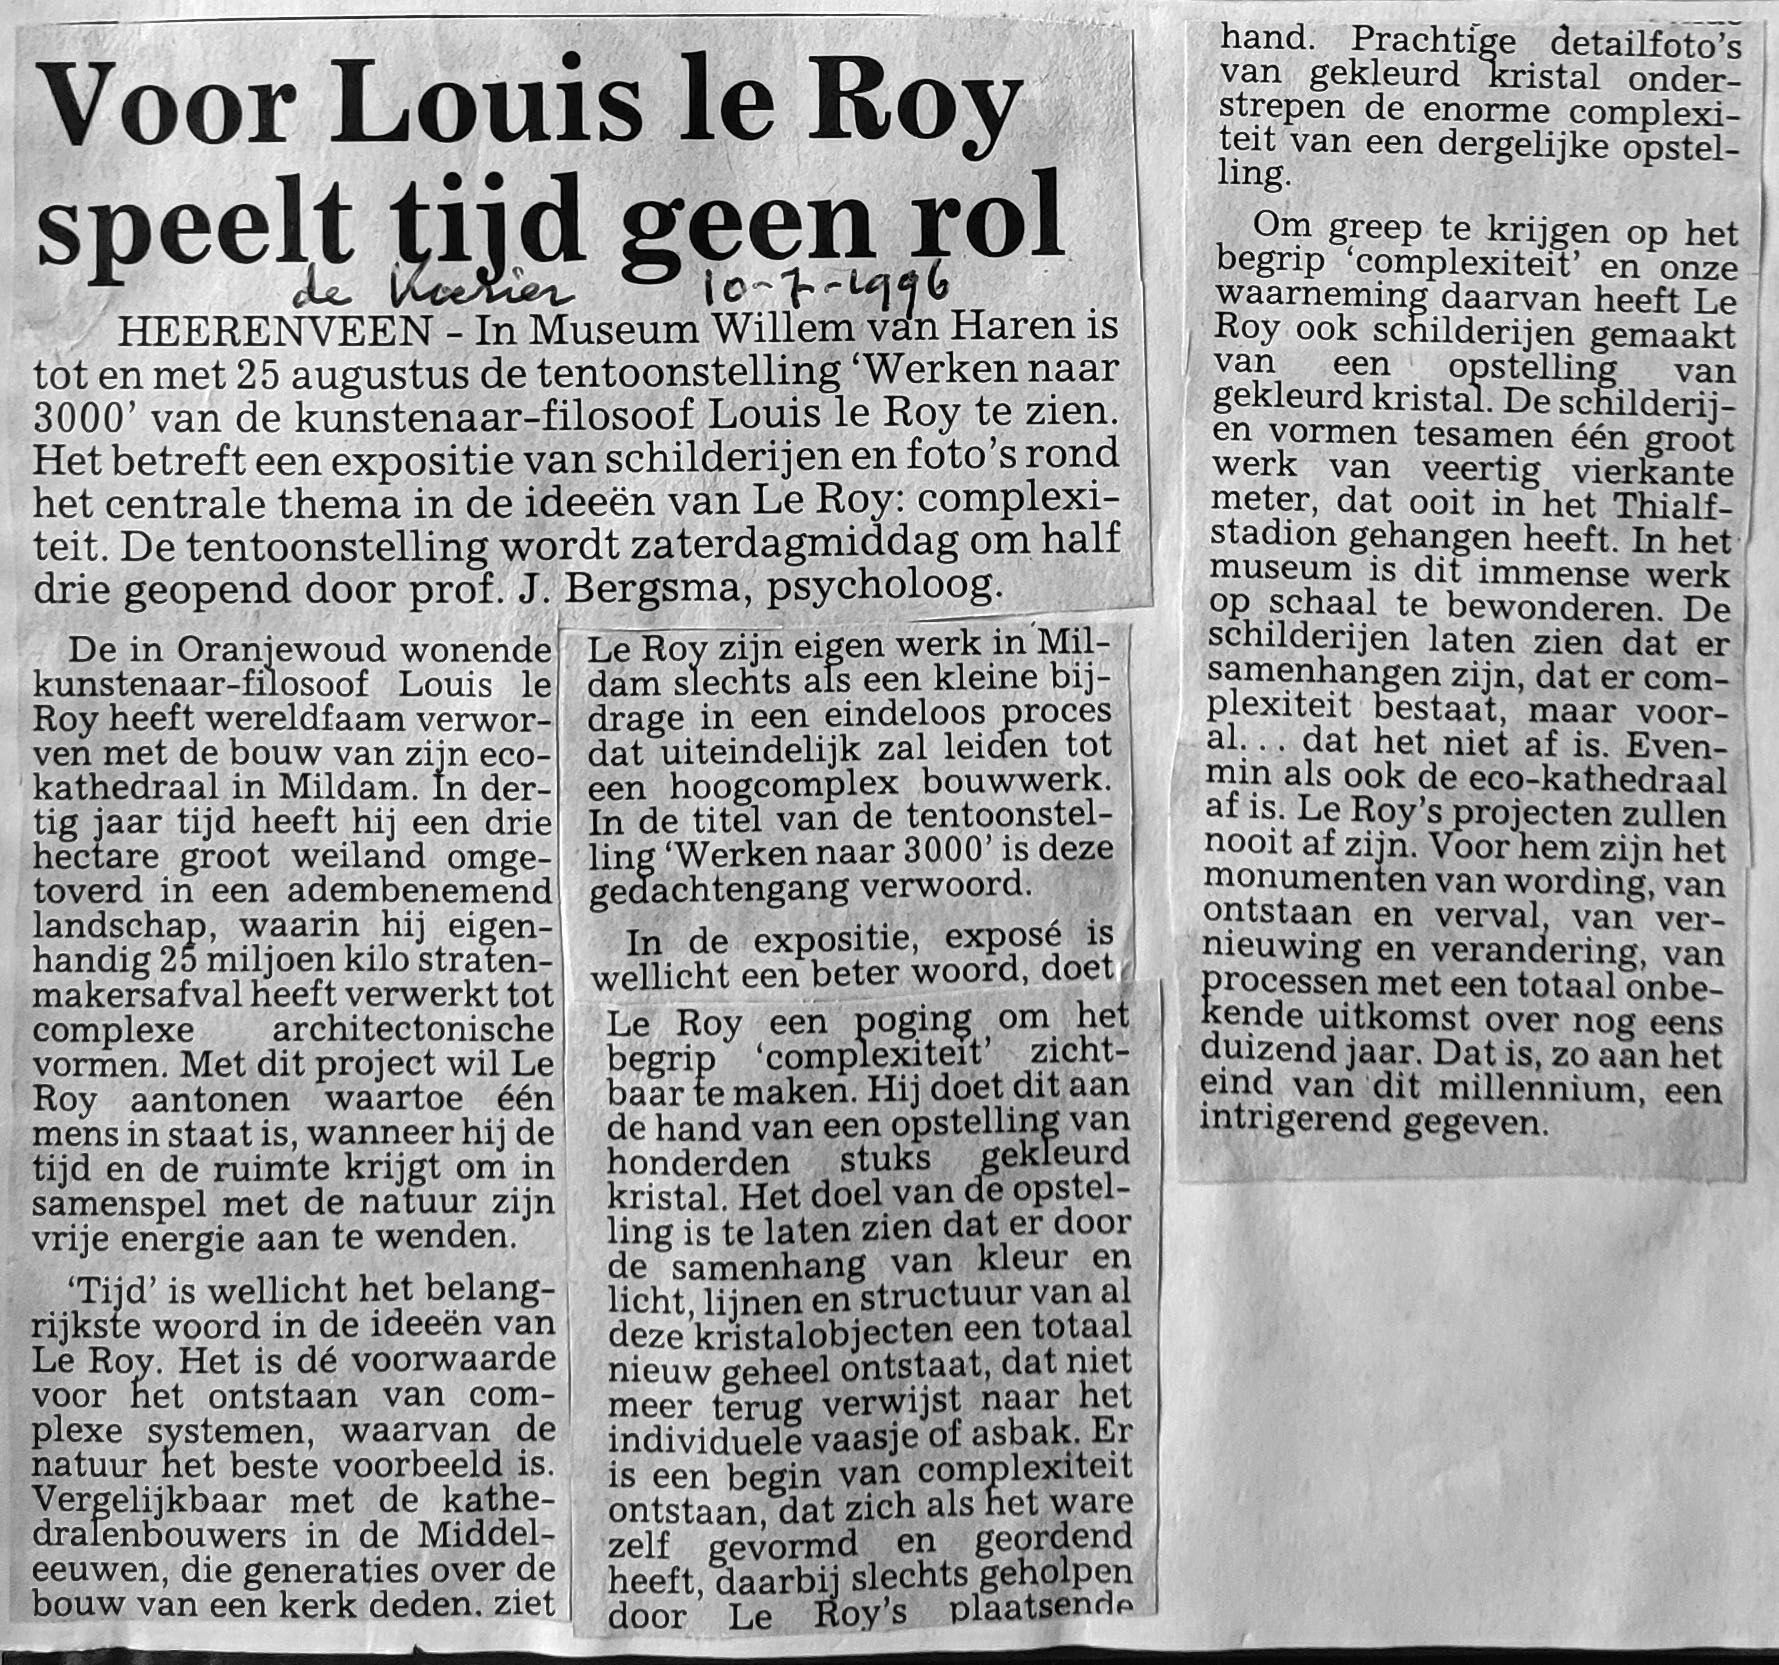 Voot Louis le Roy speelt tijd geen rol